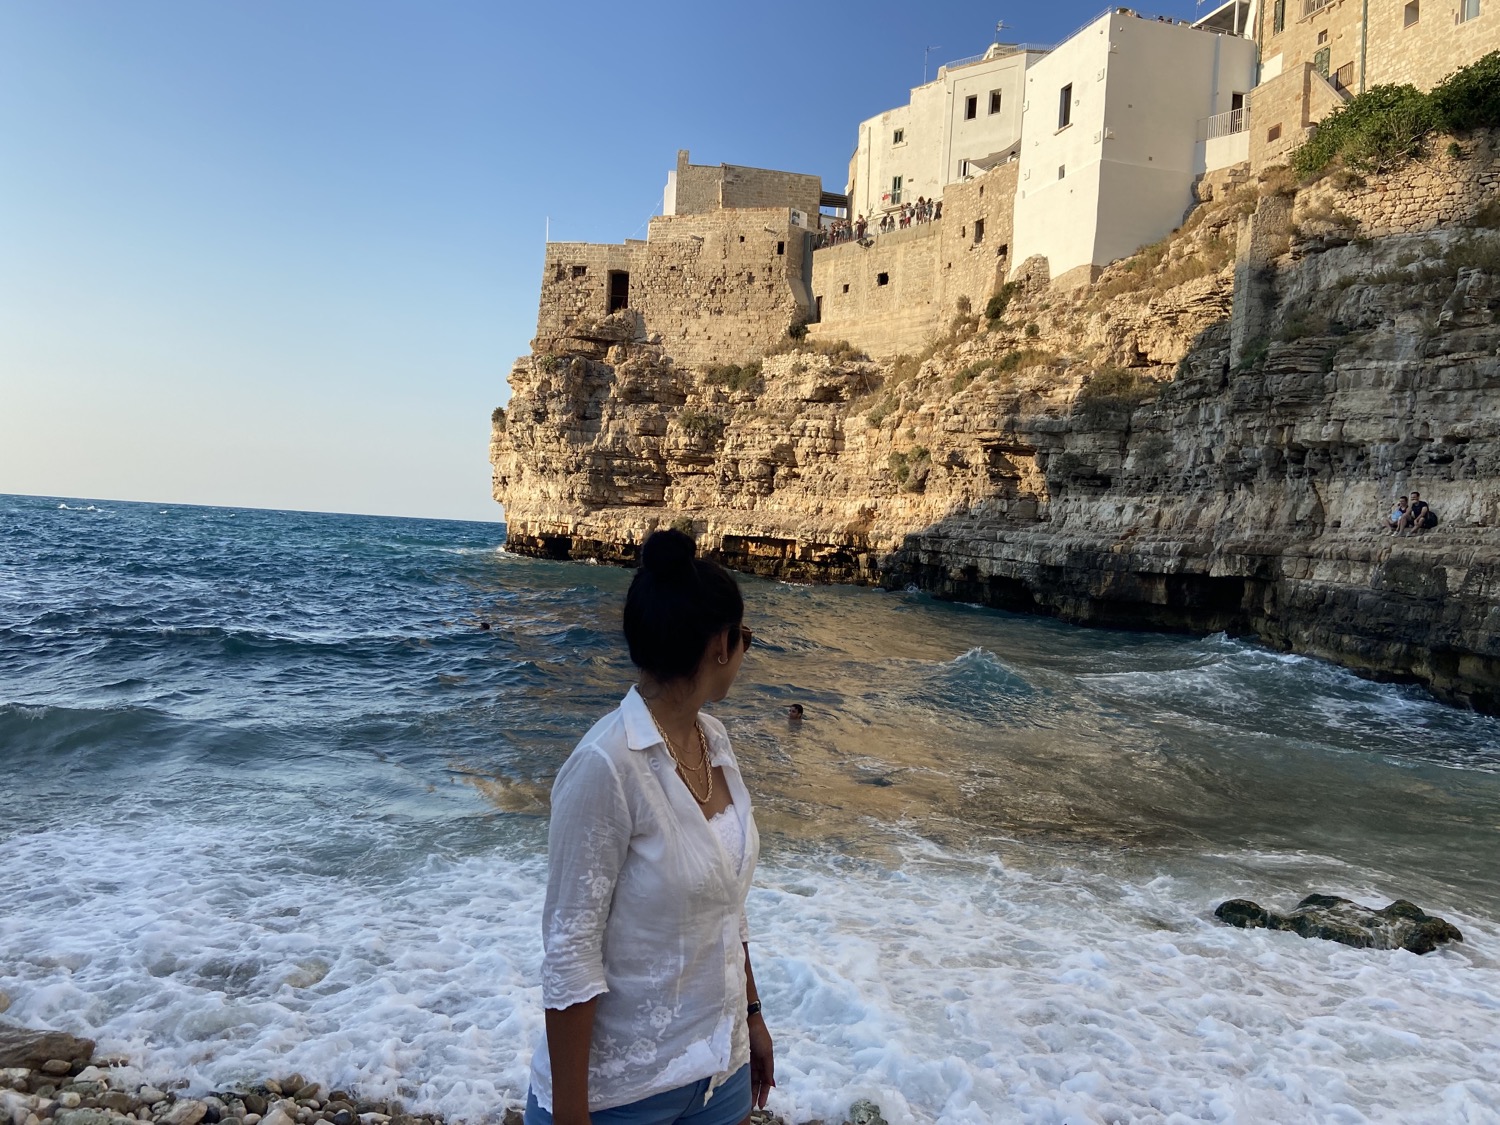 Roteiro Polignano a Mare: o que fazer nesse paraíso na região da Puglia, na Itália